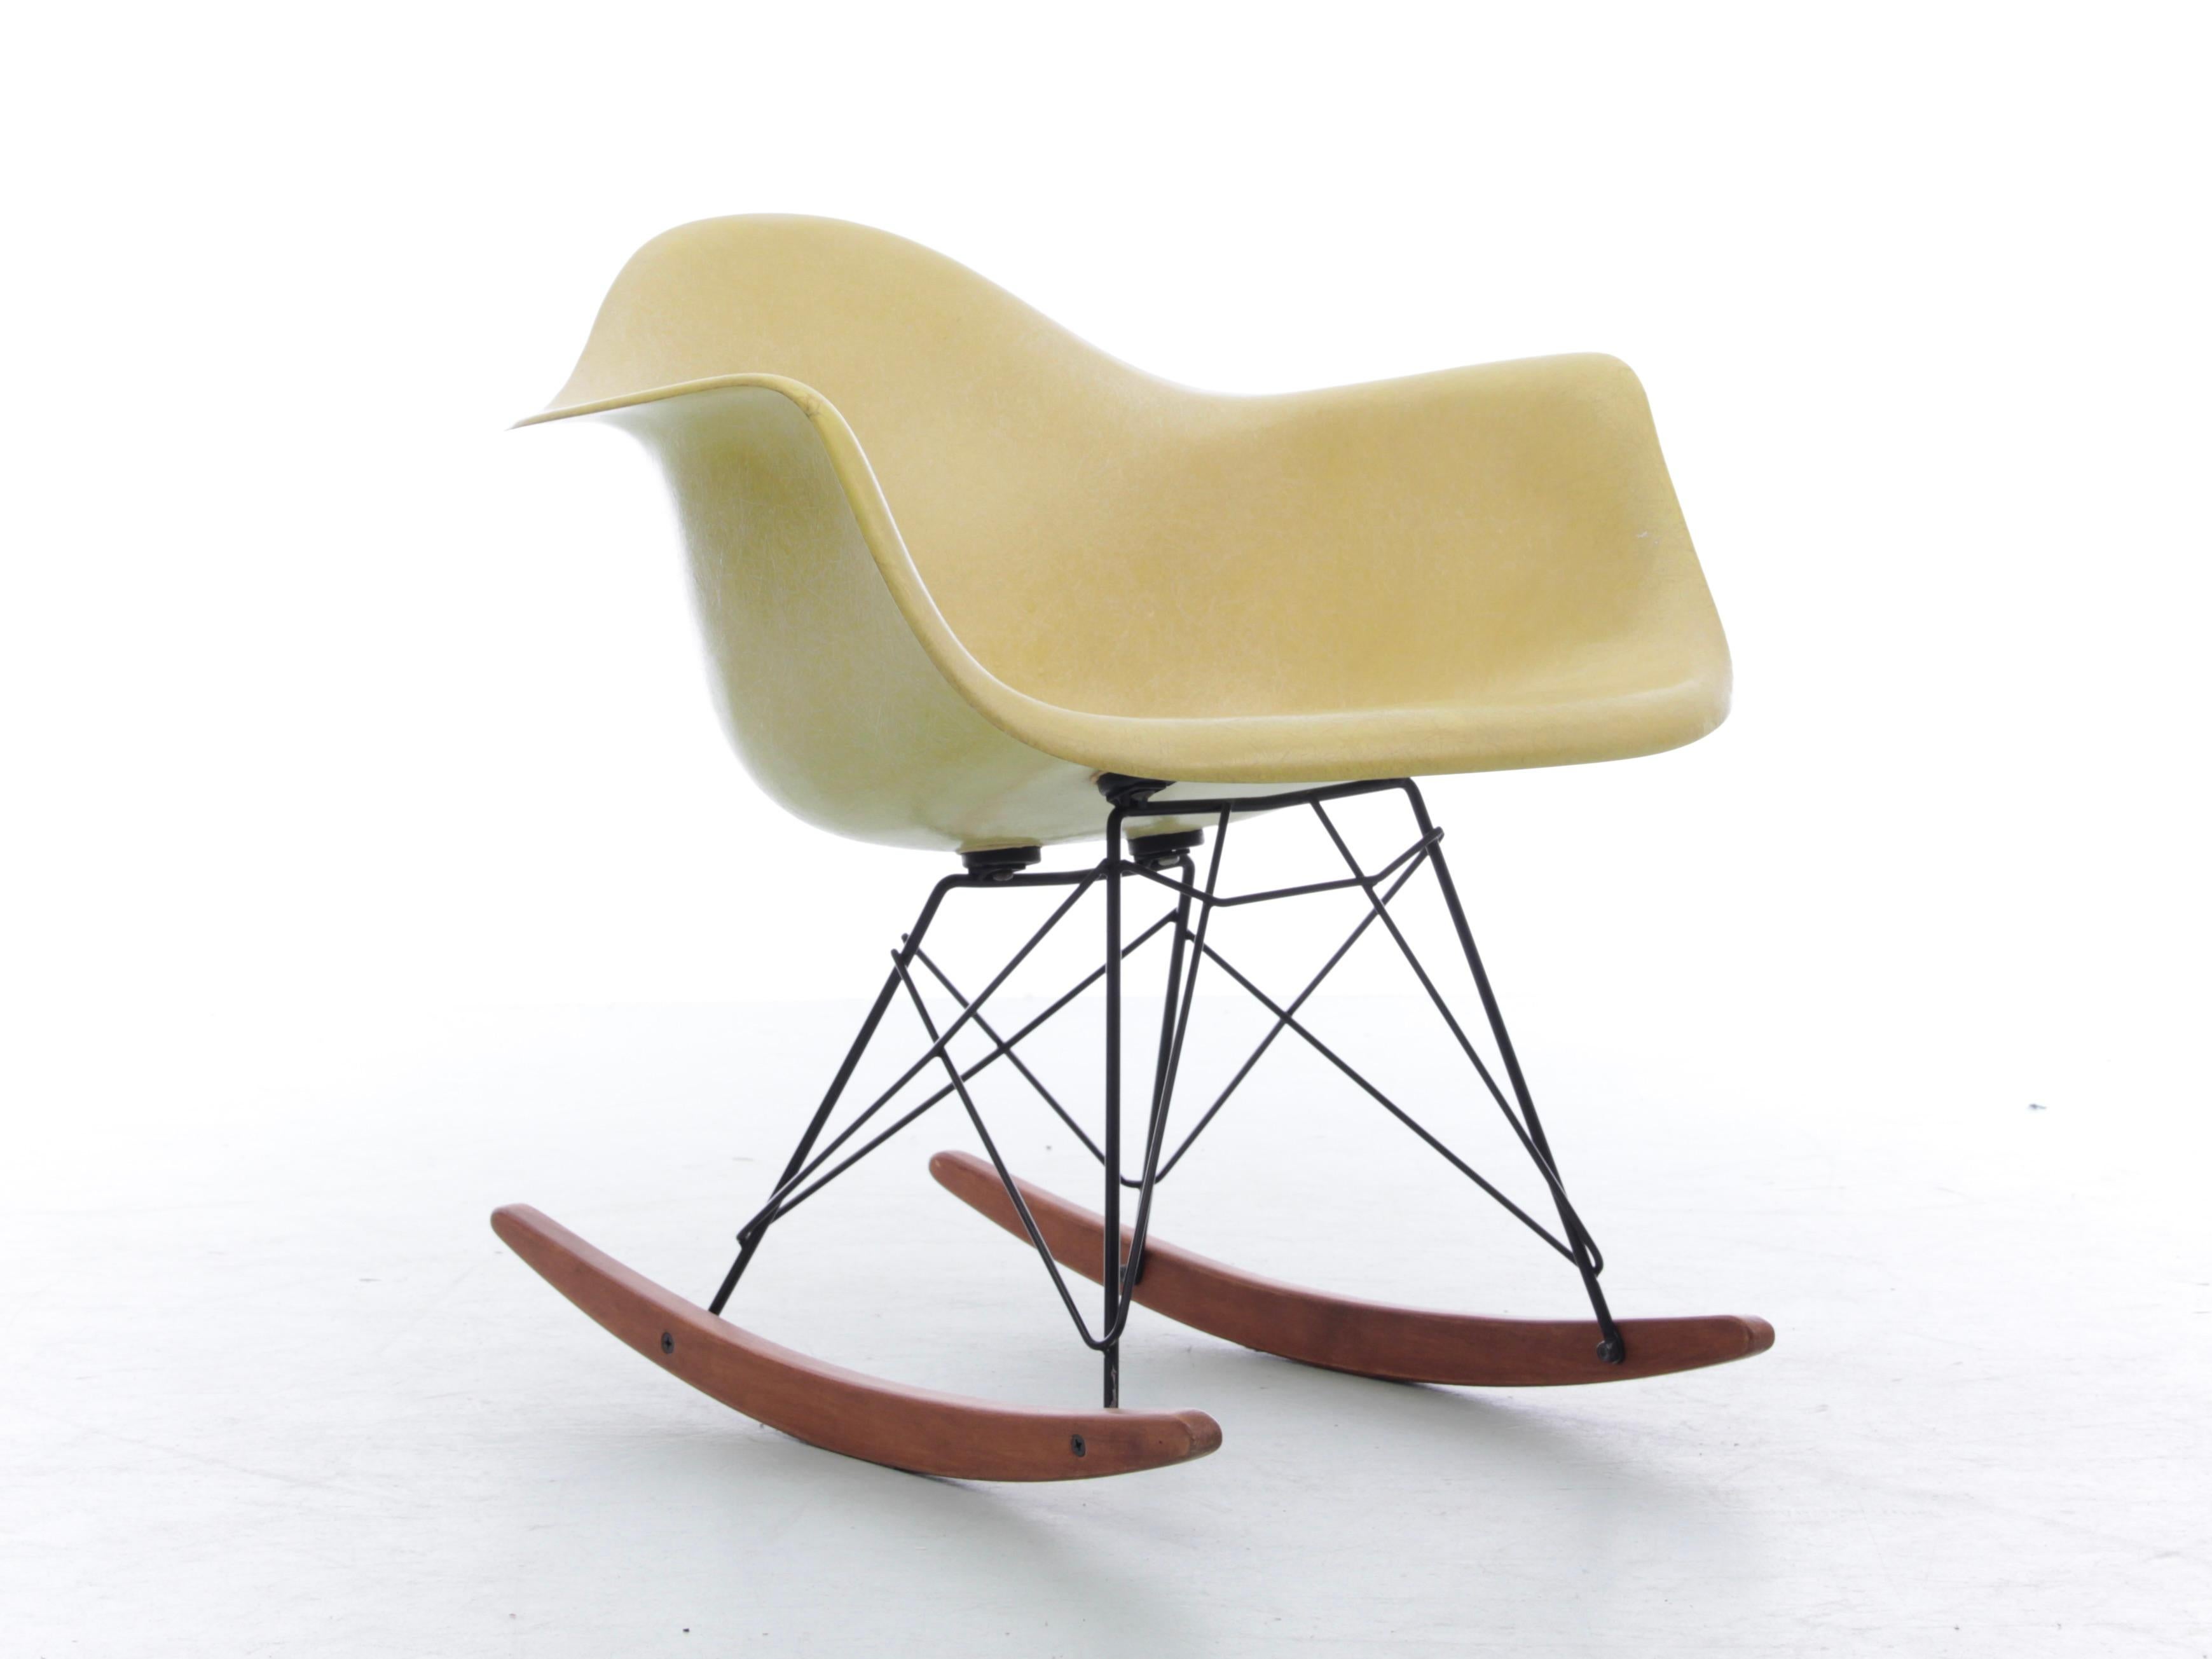 Authentique fauteuil RAR (Rocking Arm Chair) coquille Eames édition originale et vintage Herman Miller Design/One - 1950

Coque d'origine en fibre de verre de couleur jeune pâle. Trace de Label sous le siège.

Condit en excellent état d'origine.